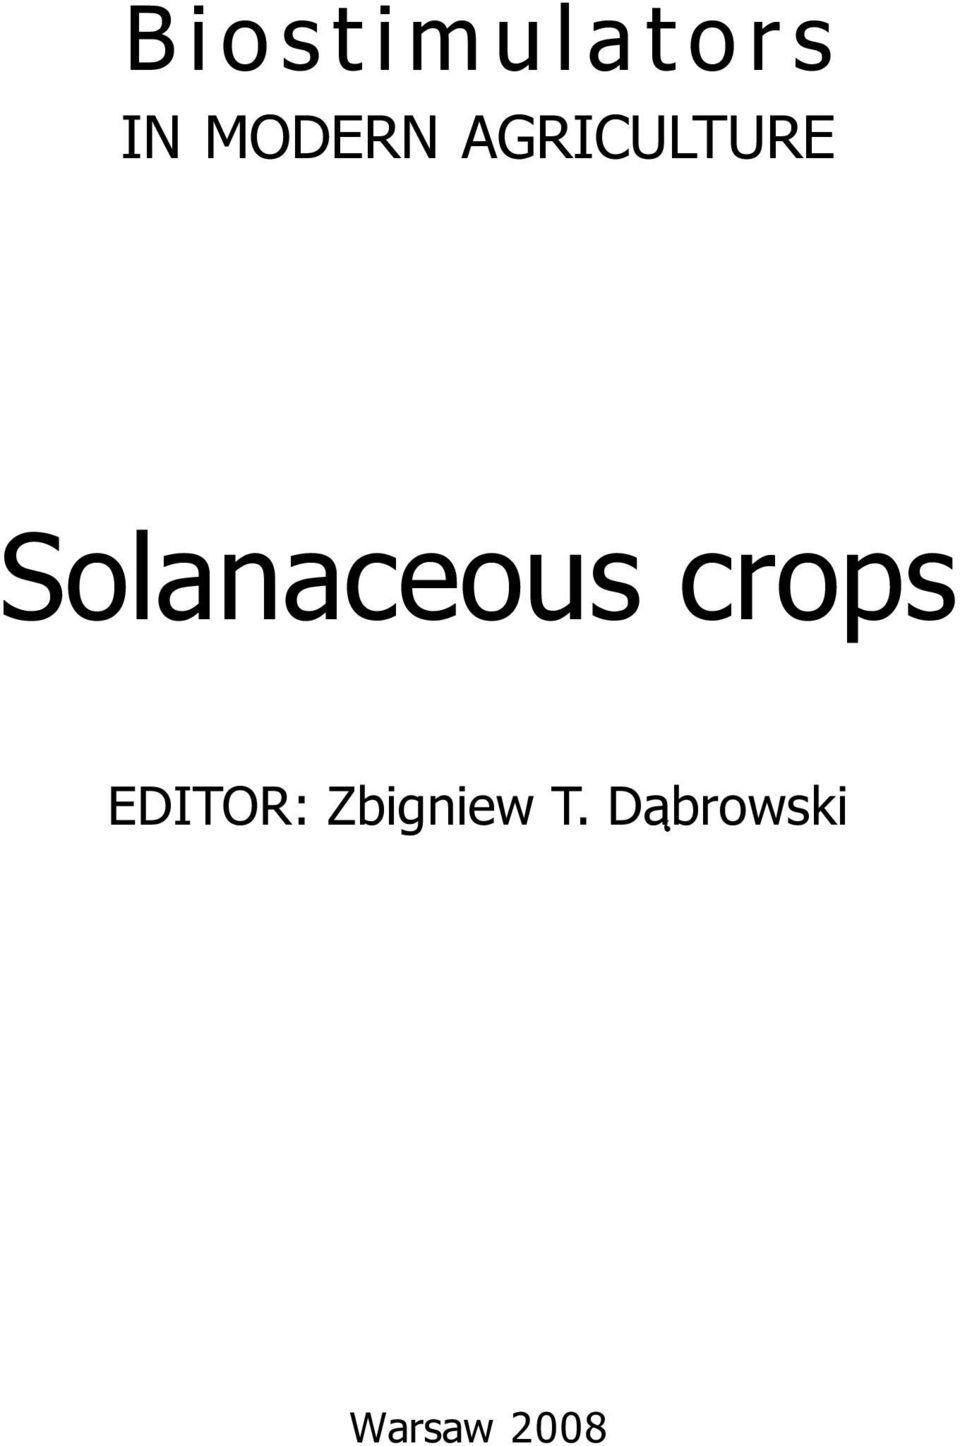 Solanaceous crops